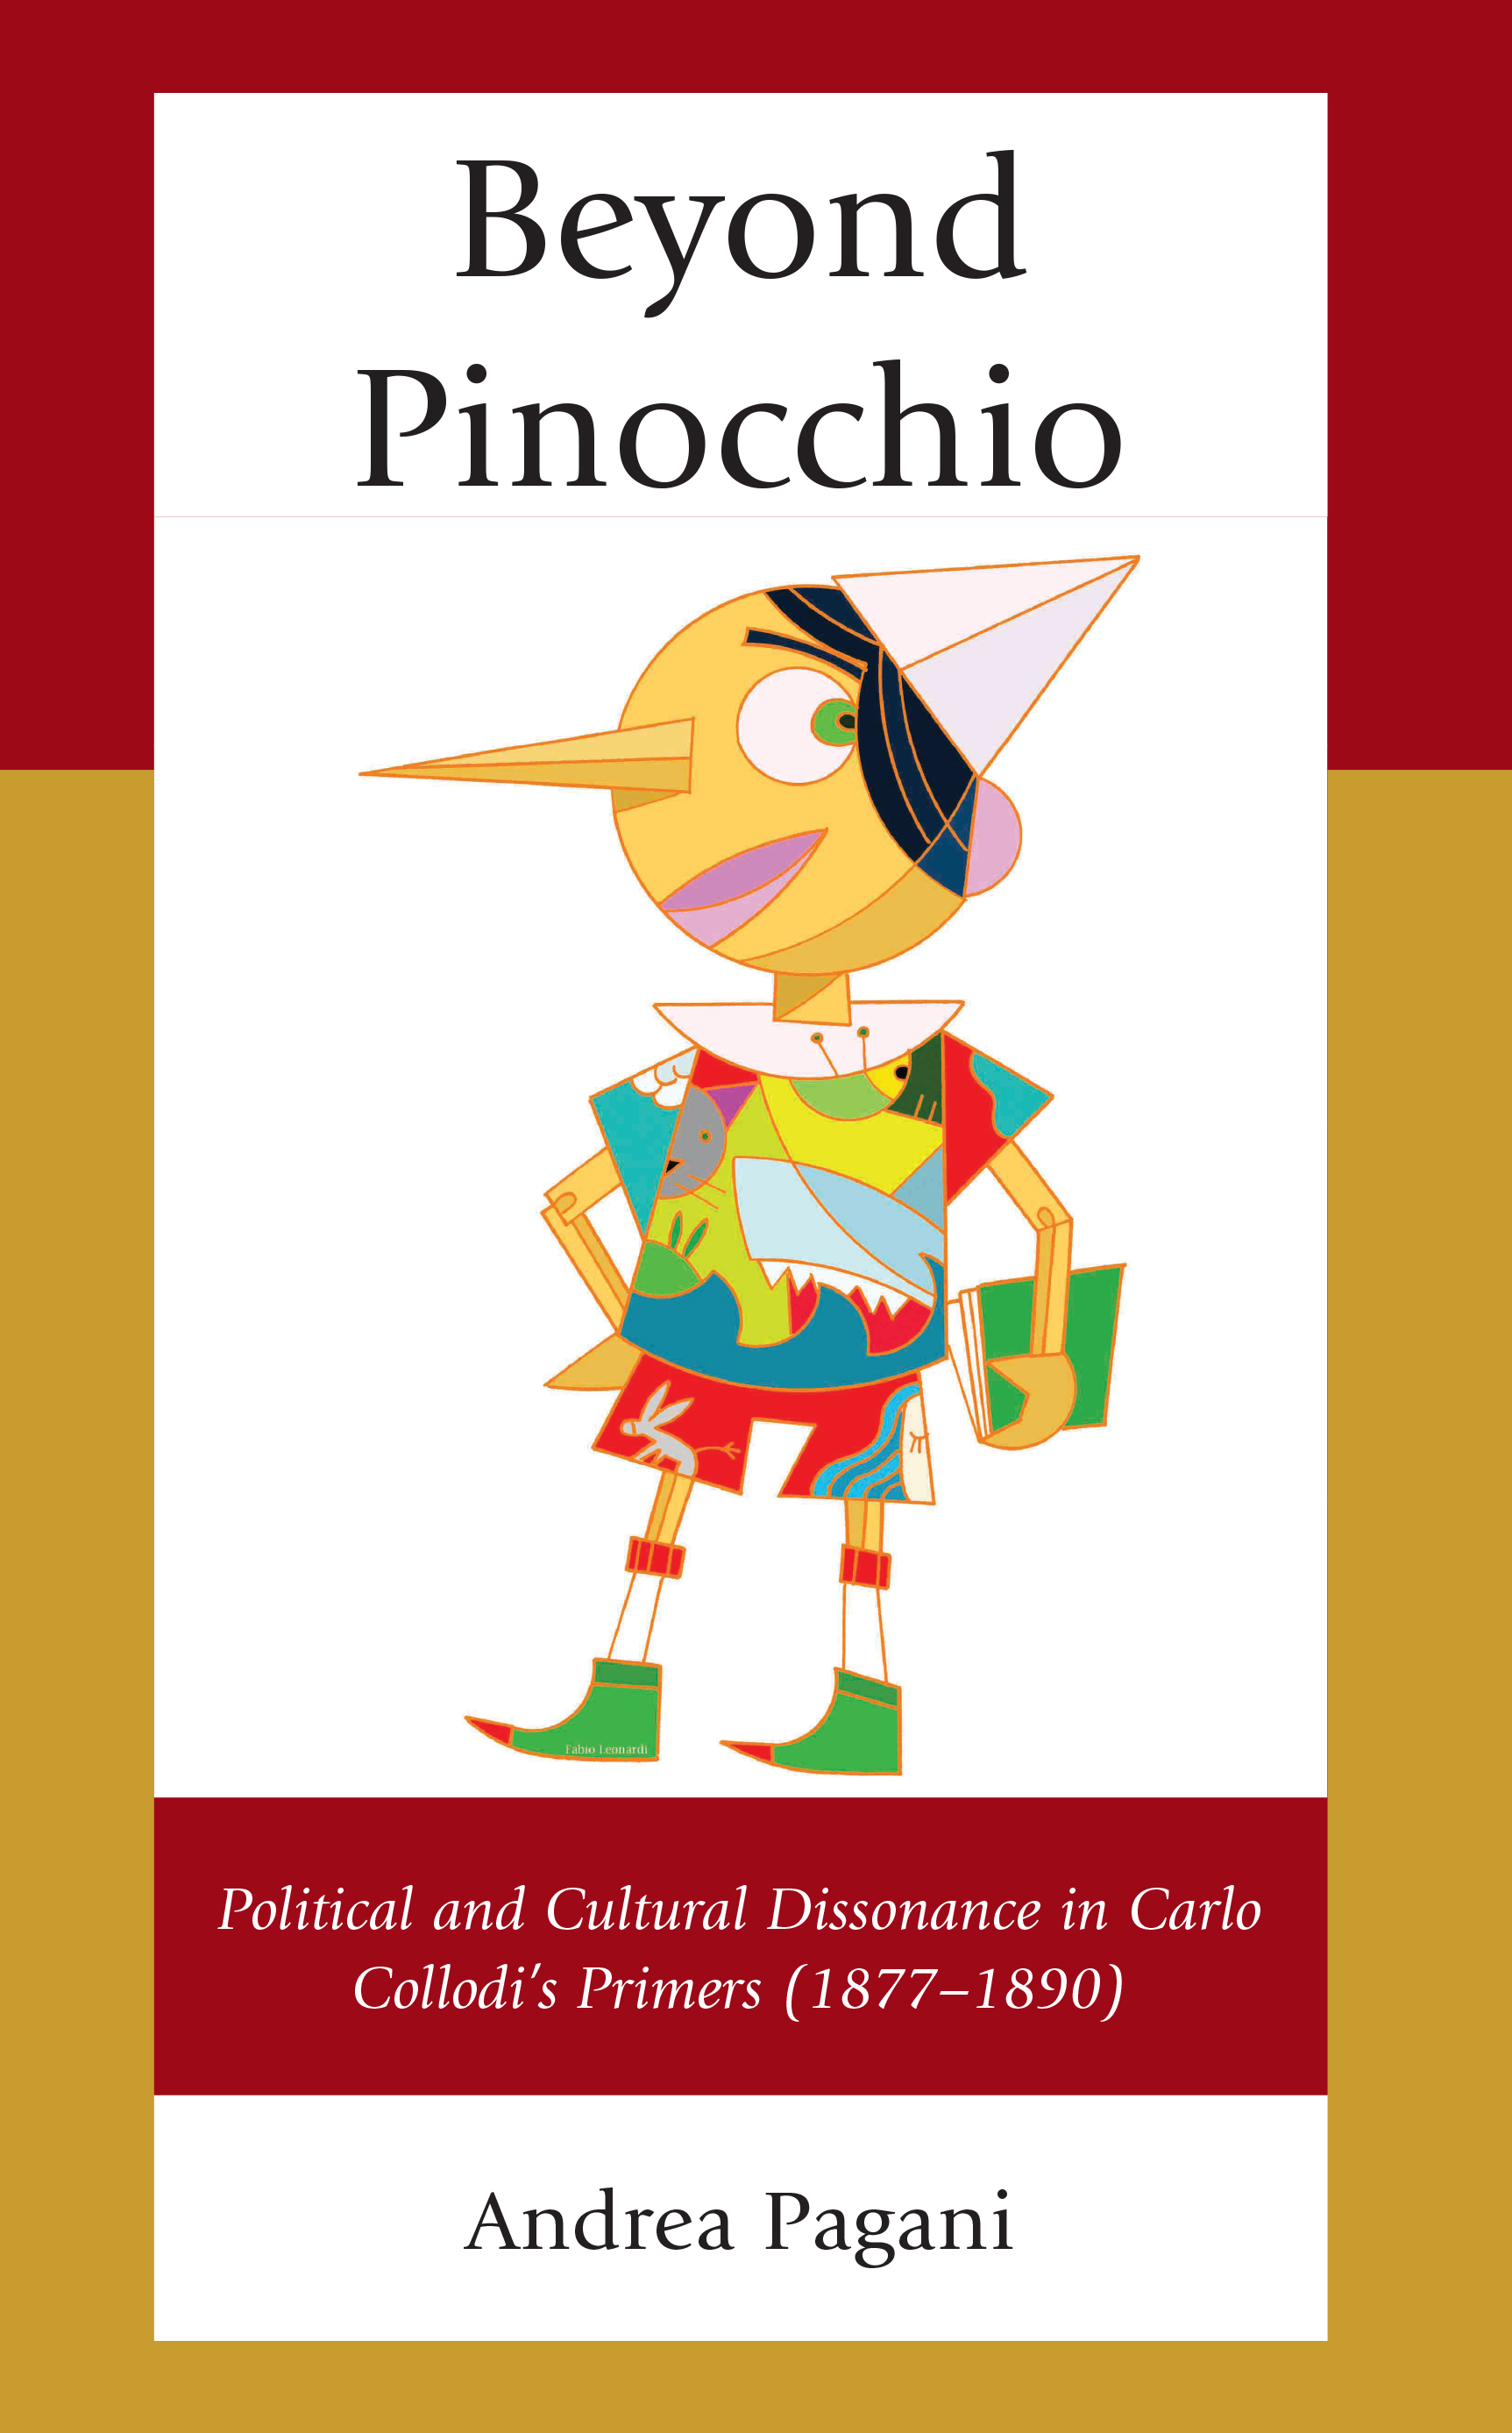 Beyond Pinocchio: Political and Cultural Dissonance in Carlo Collodi's Primers (1877-1890)